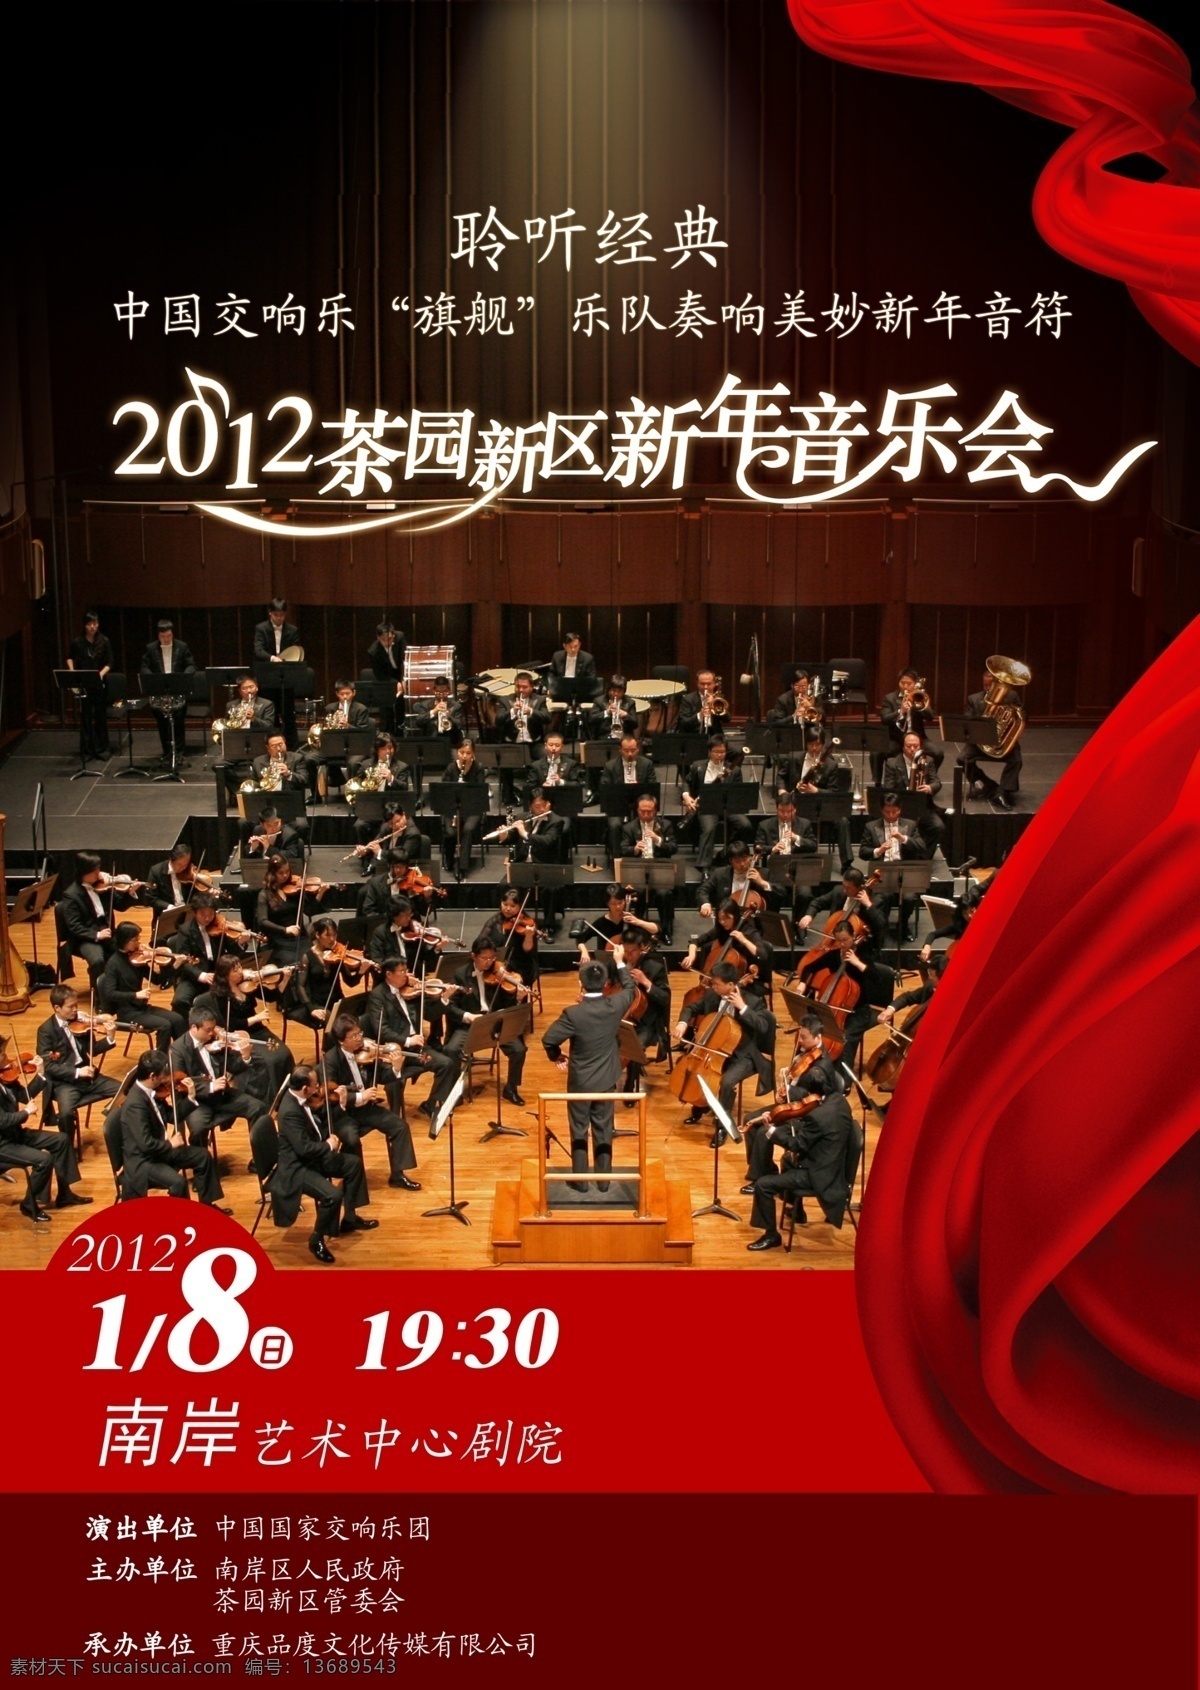 国家 交响乐团 重庆 音乐会 国家交响乐团 新年音乐会 飘带 广告设计模板 源文件